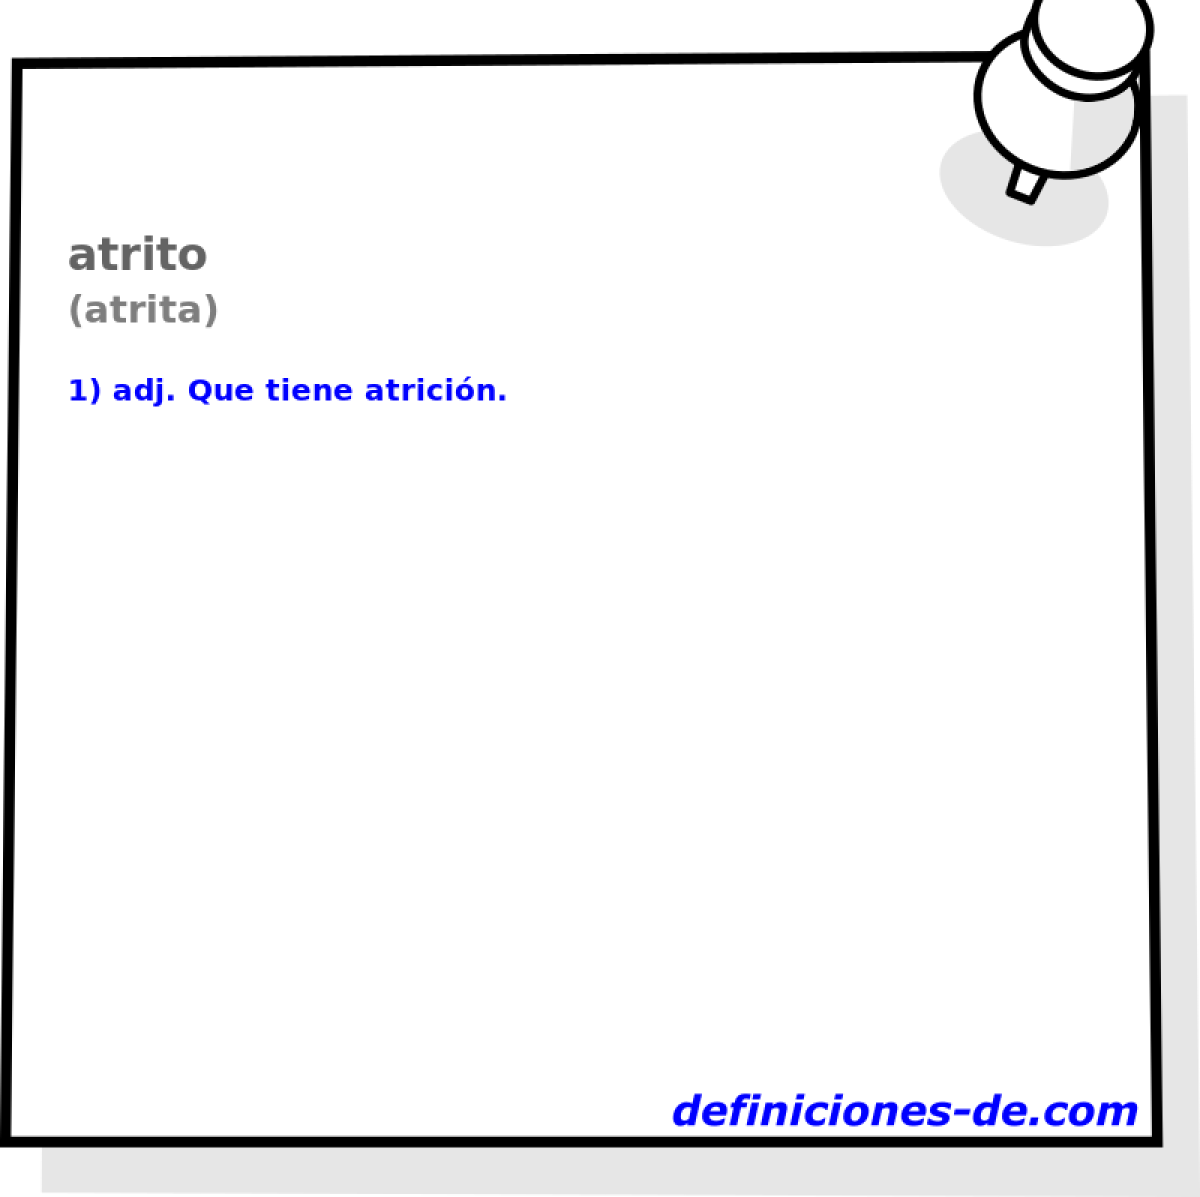 atrito (atrita)